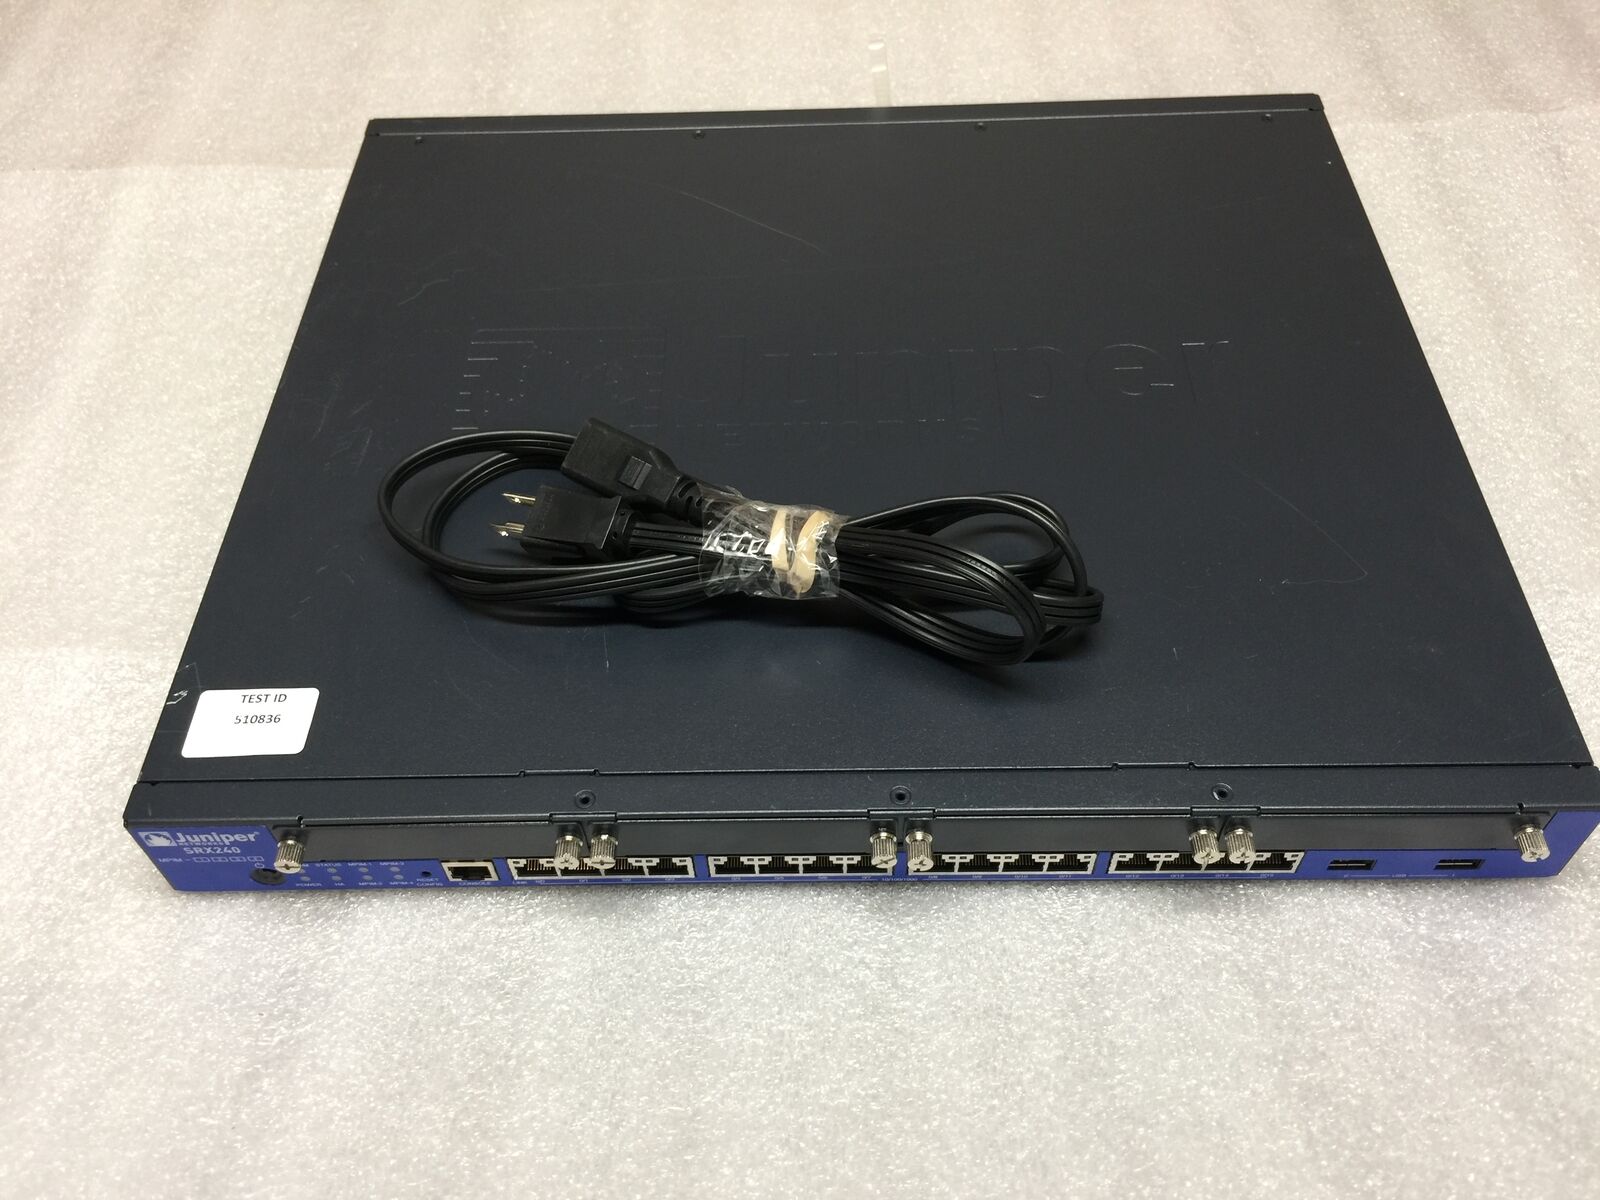 Juniper SRX240 SRX240H2-PoE 16 Port Gigabit Ethernet Gateway Switch - TESTED